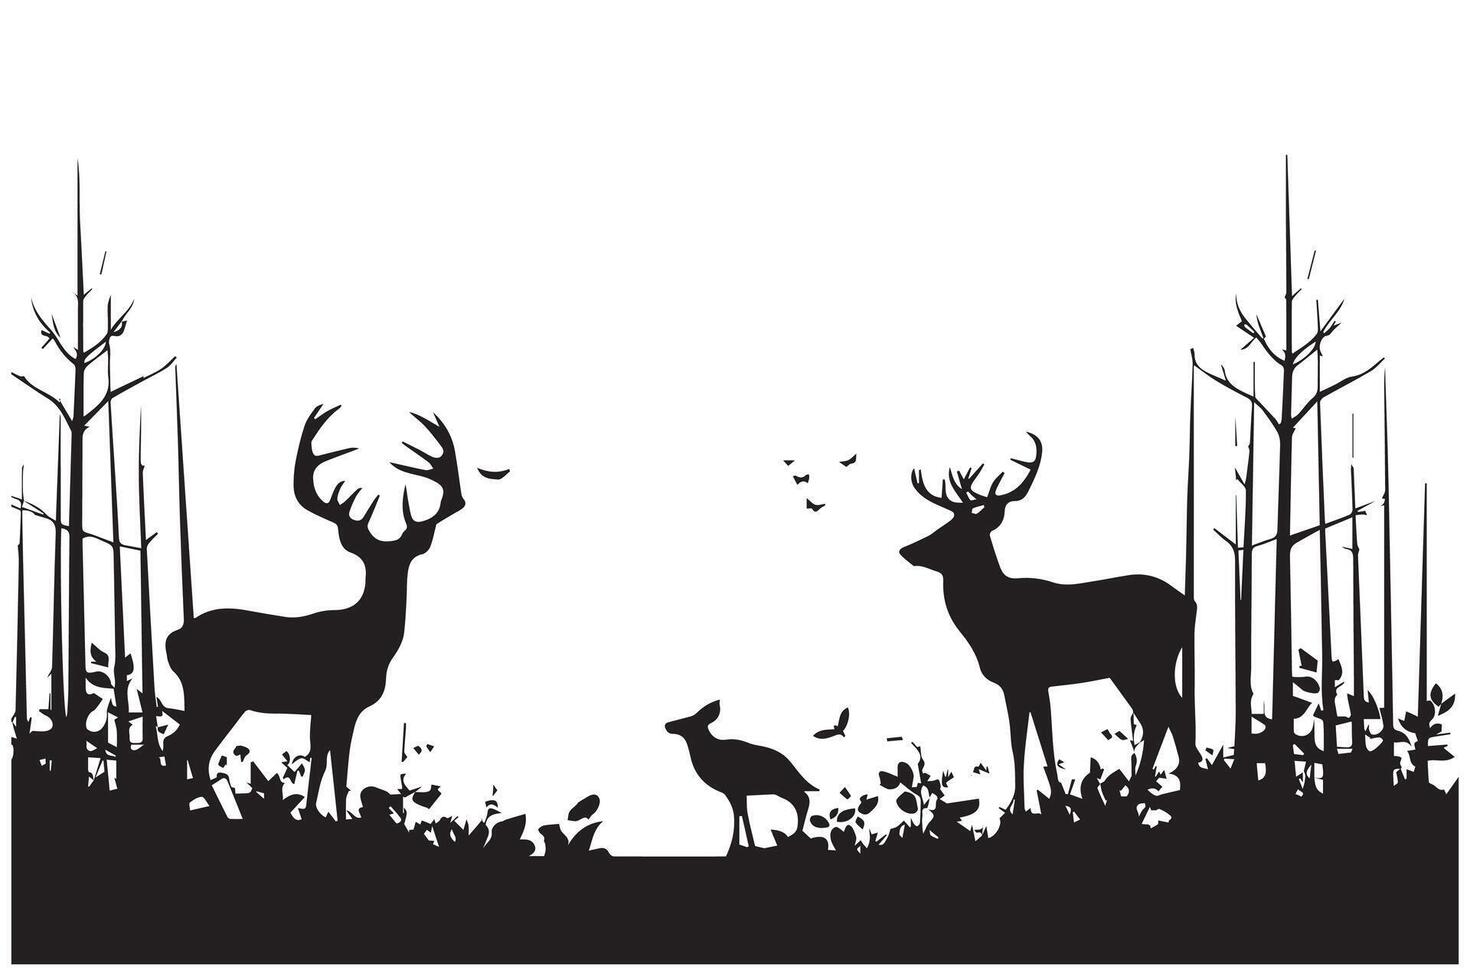 bosque arboles siluetas, ciervo animal y Pato rebaño, caza deporte. naturaleza paisaje o fauna silvestre escena antecedentes con pino bosque y caído árbol vector